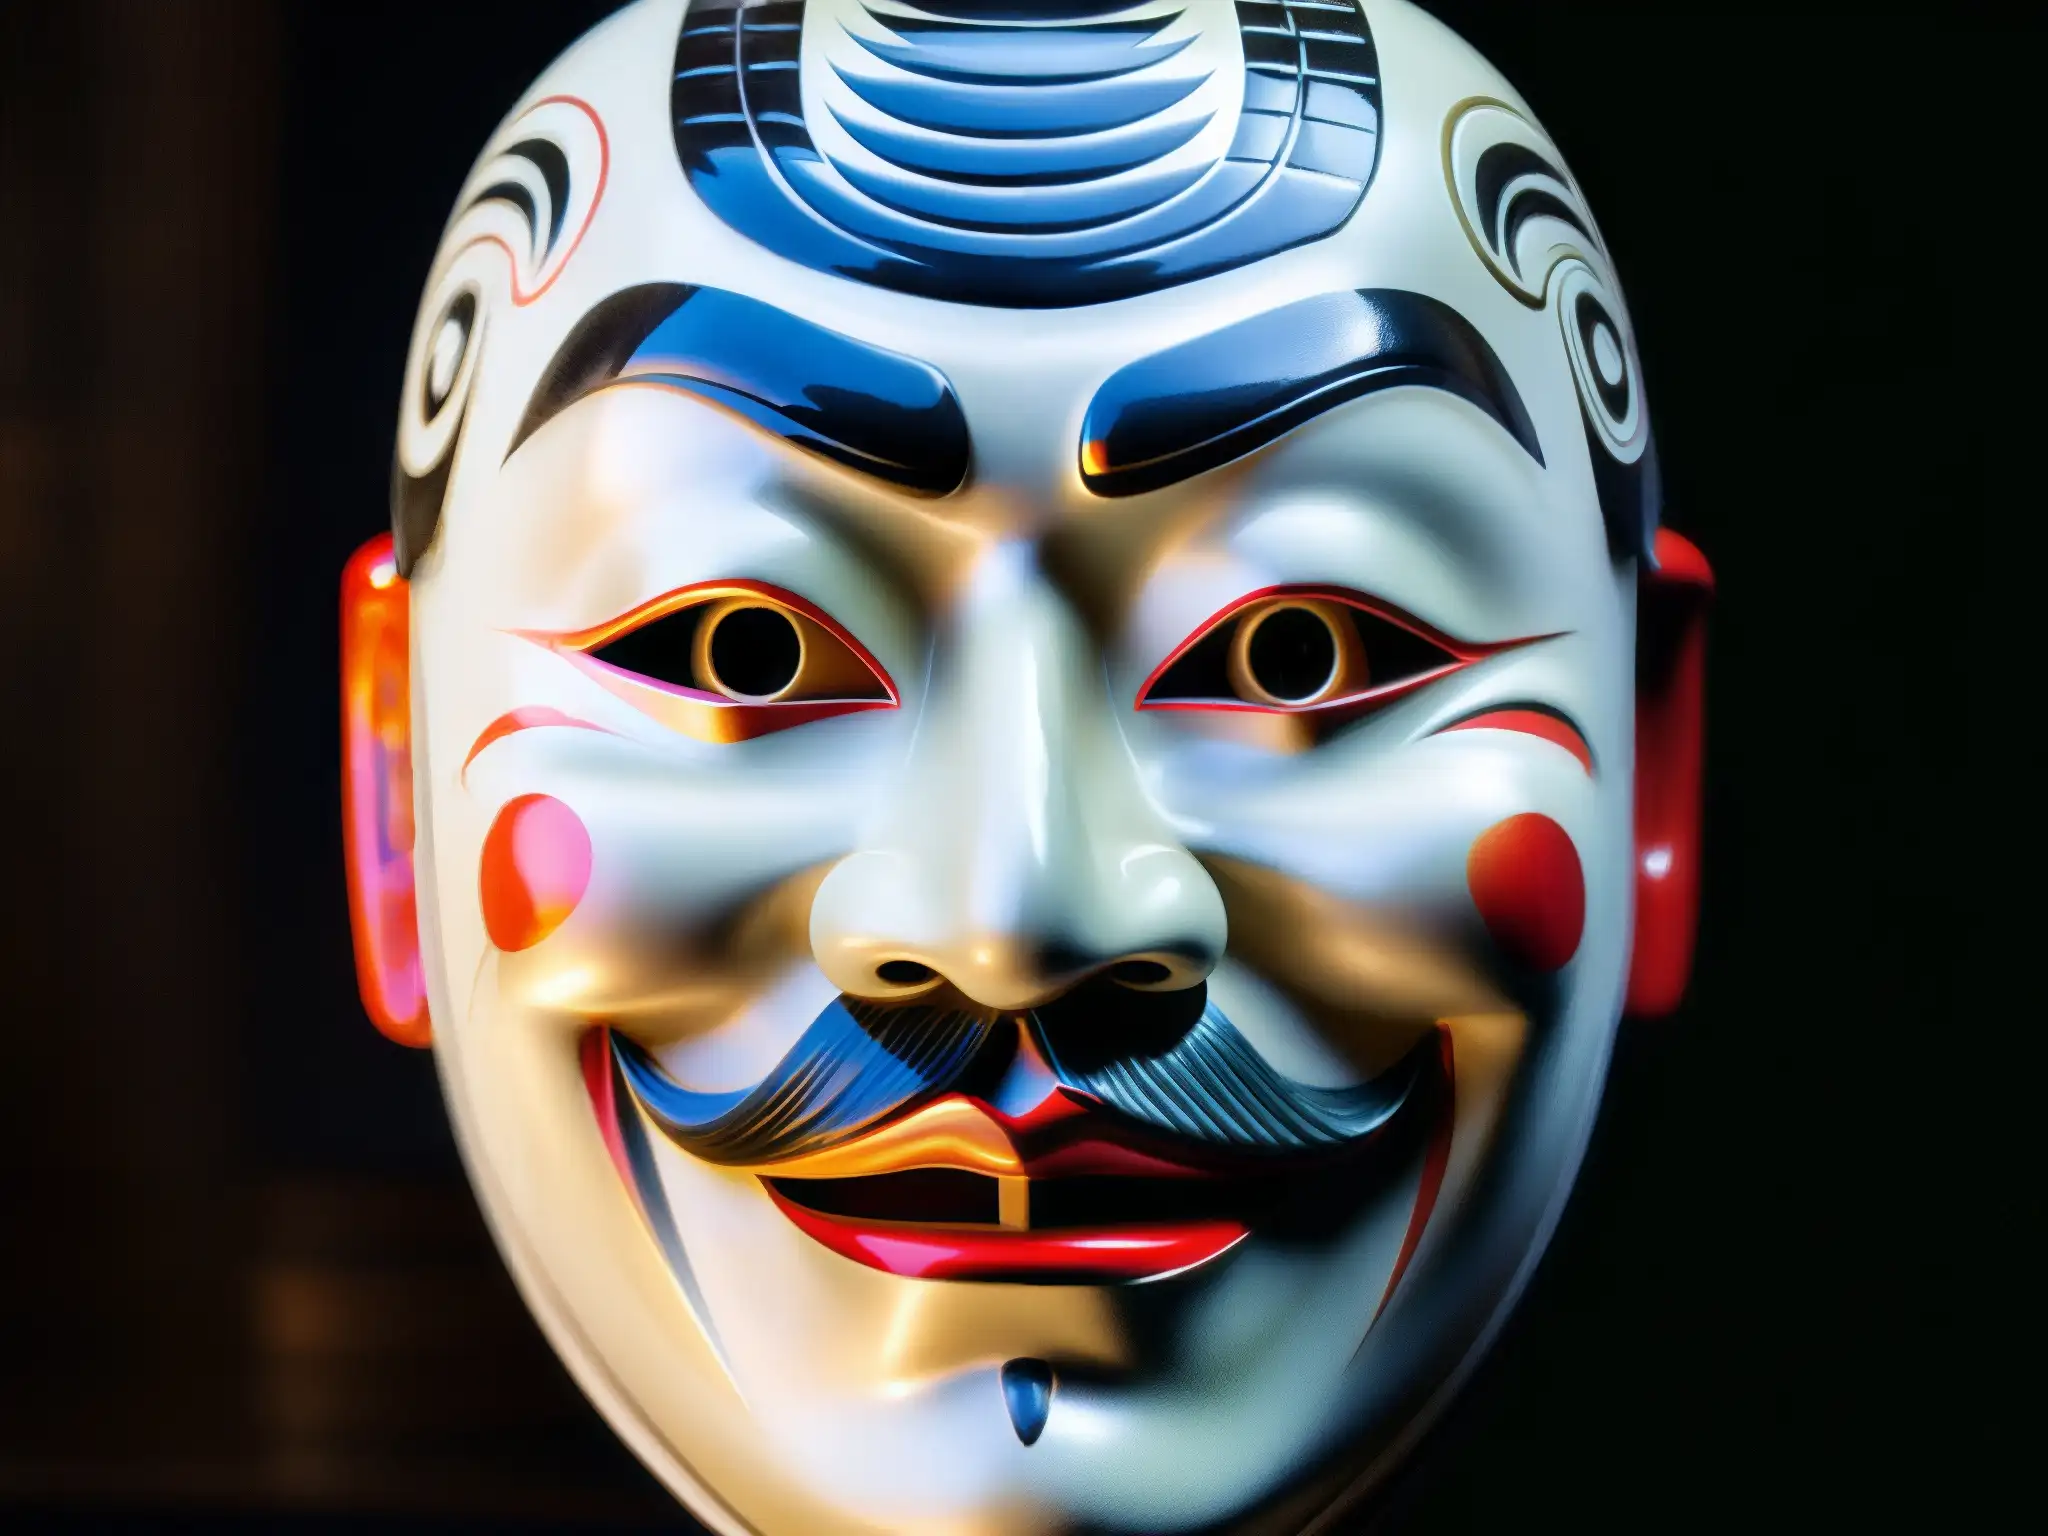 Detallada máscara japonesa Noh, reflejando la enigmática atmósfera de las leyendas urbanas japonesas y videojuegos